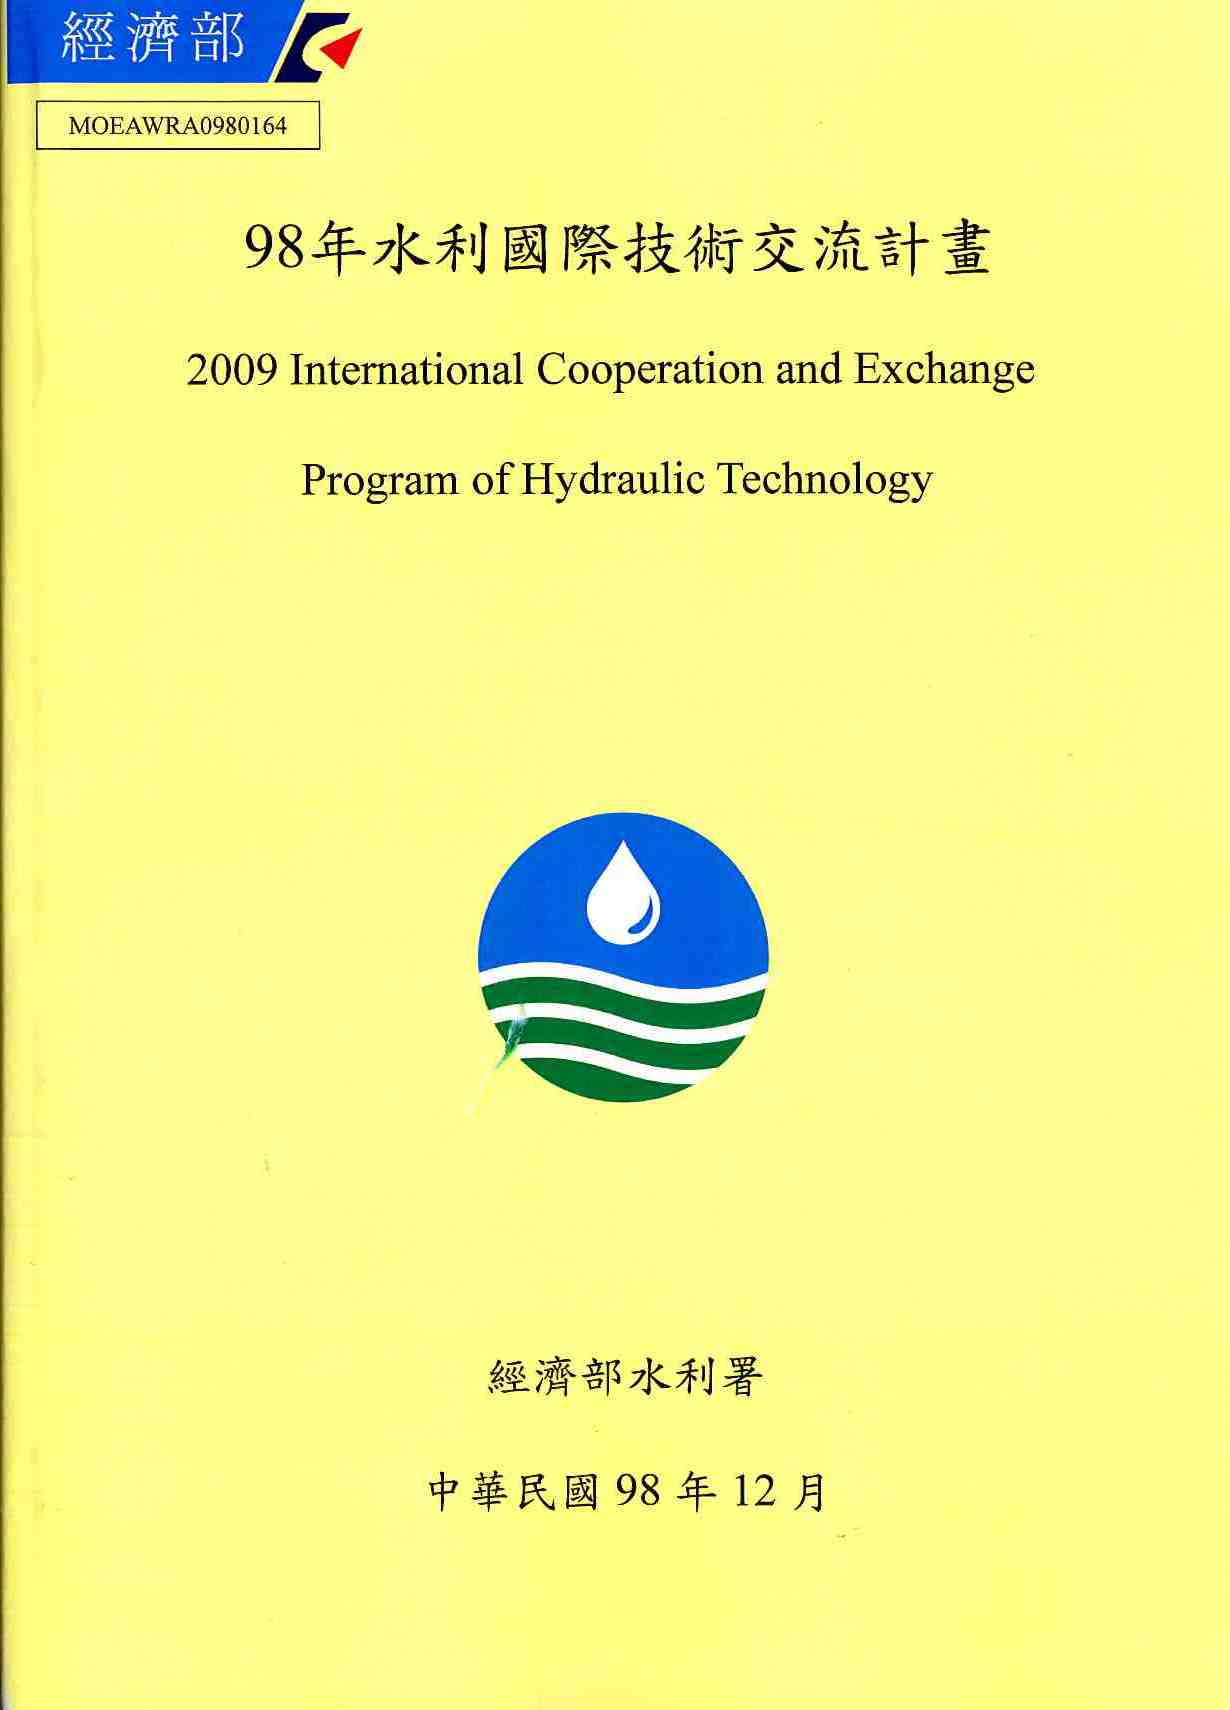 98年水利國際技術交流計畫